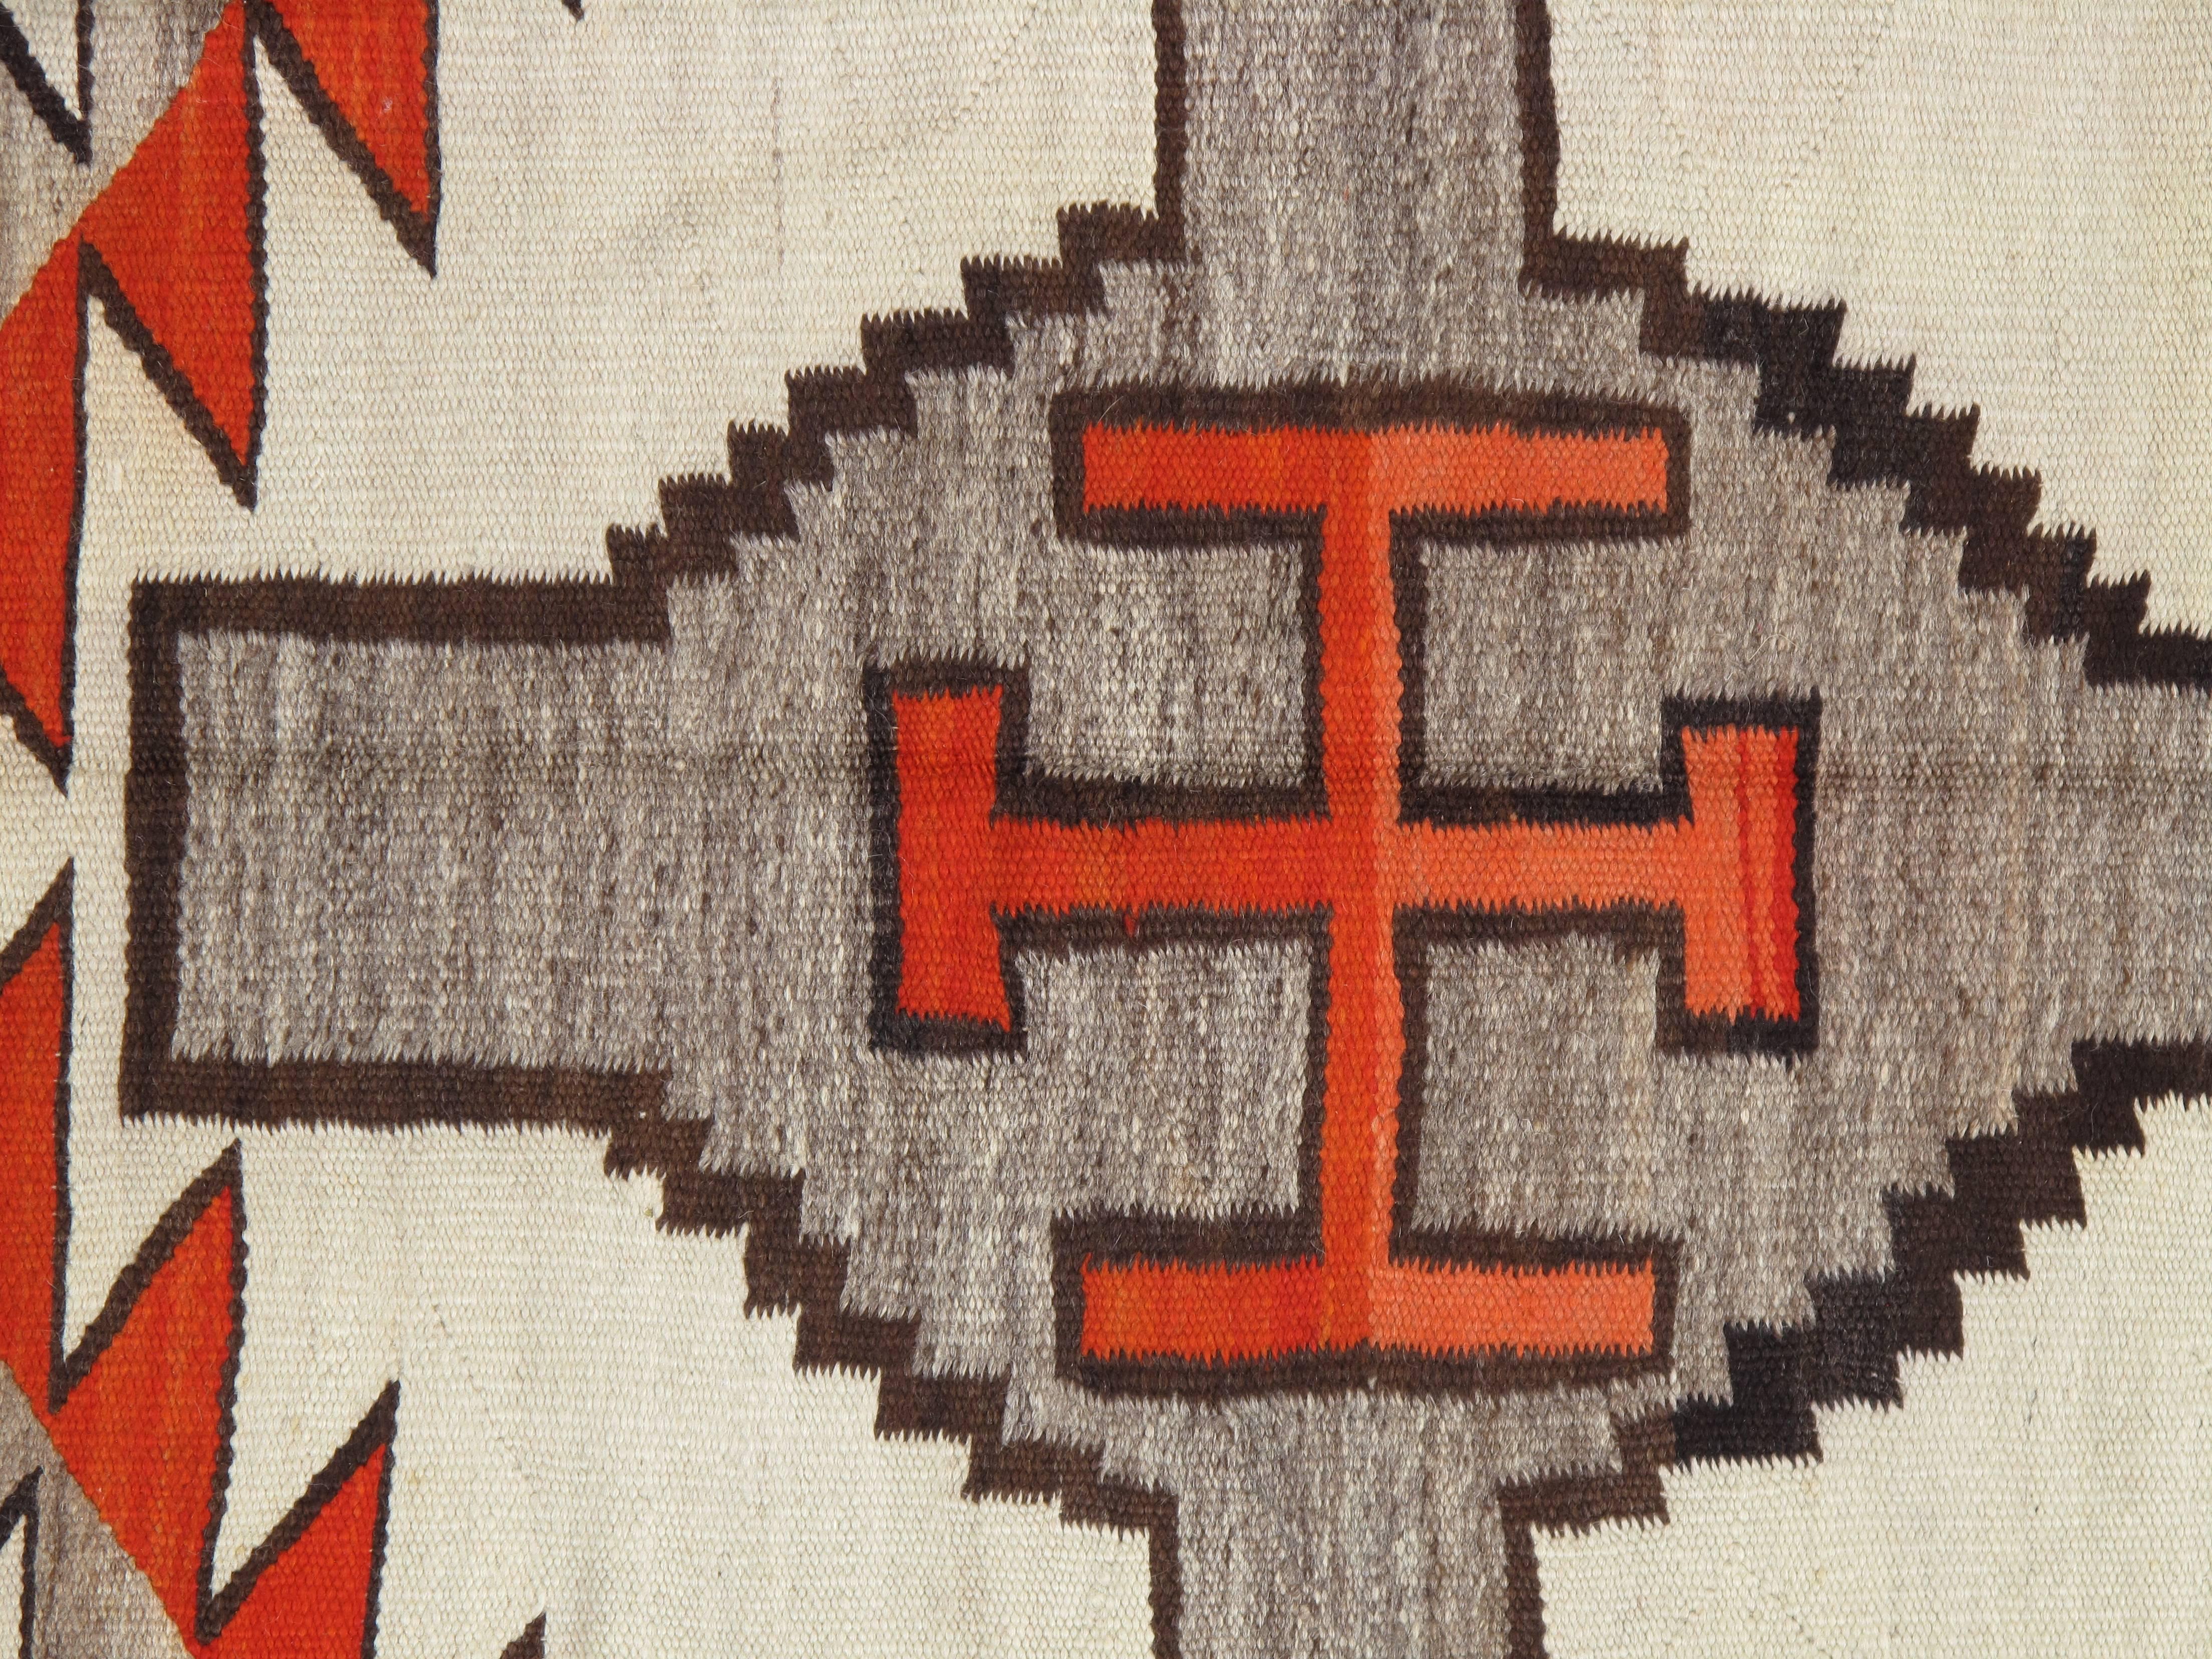 American Antique Navajo Carpet, Folk Rug, Handmade Wool Rug, Tan, Coral, Beige